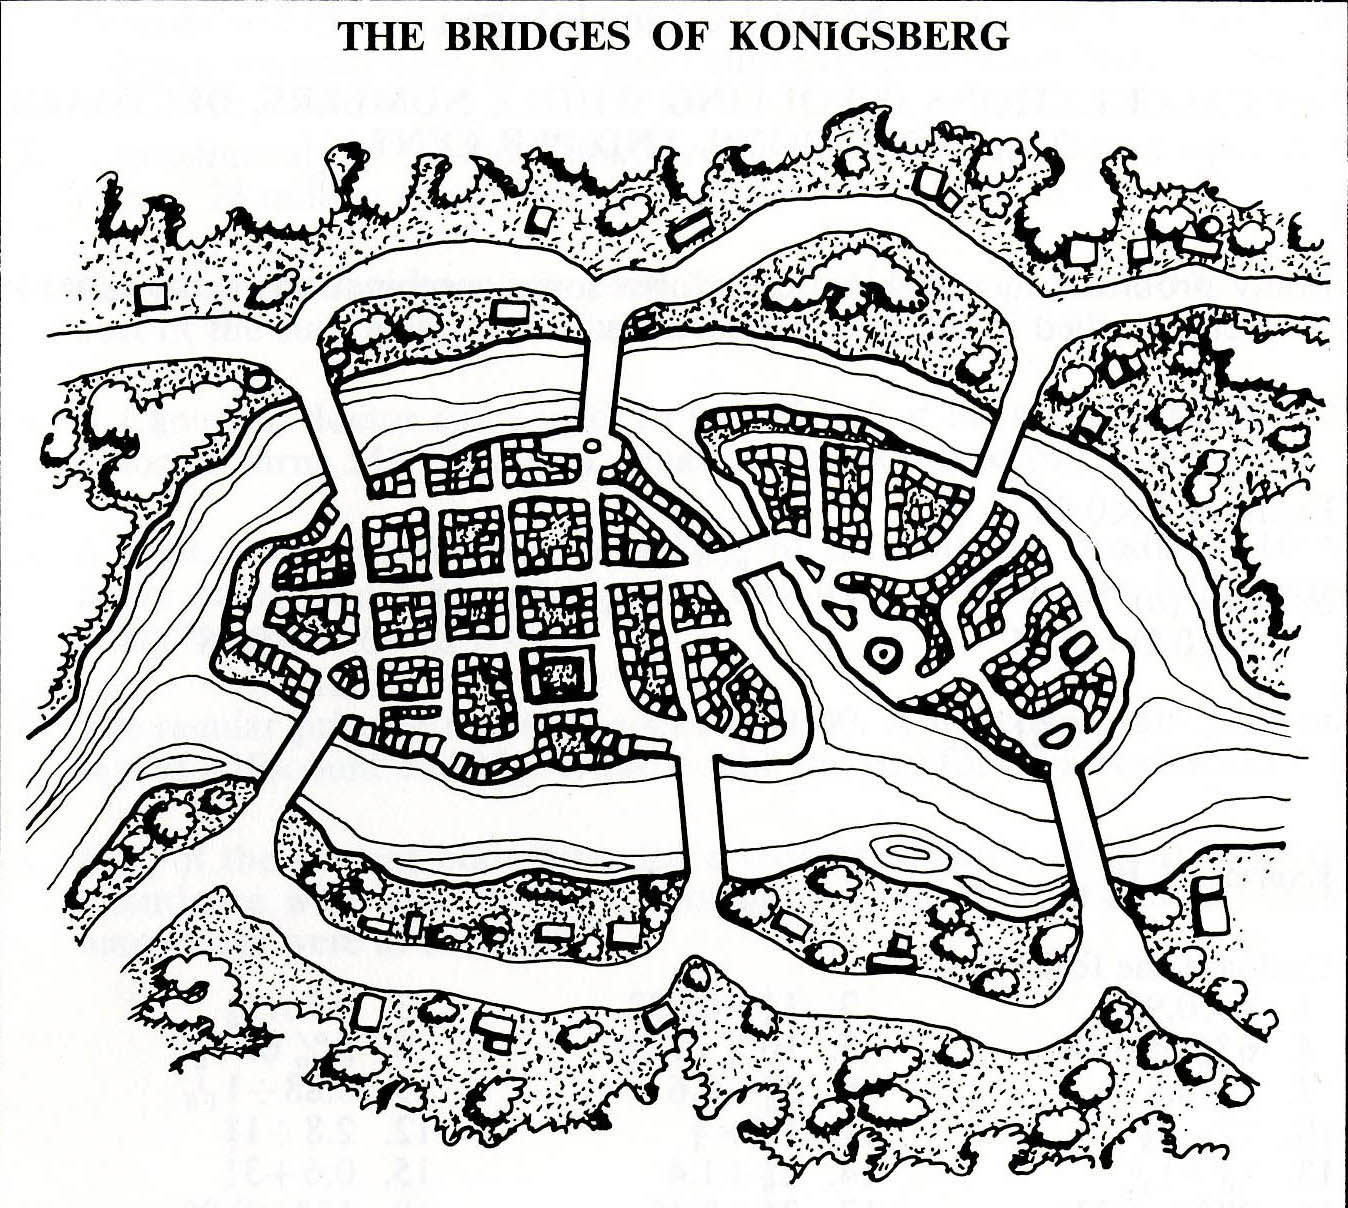 The Bridges of Konigsberg